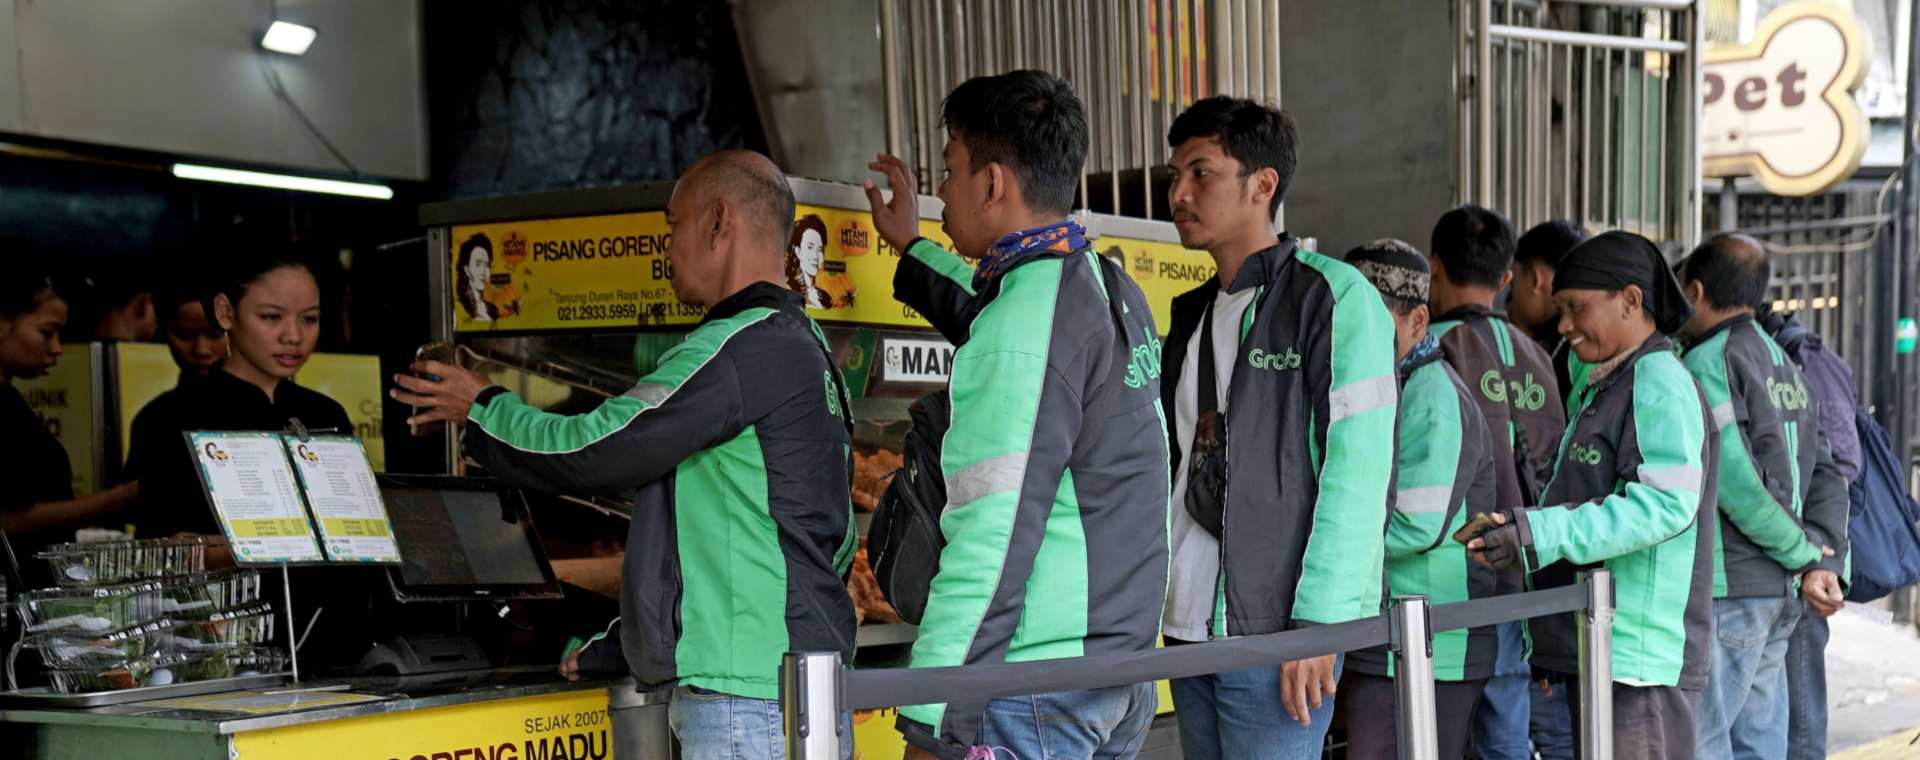 Driver GrabFood dari Grab Holdings Inc. berbaris untuk mengambil pesanan di toko Pisang Goreng Bu Nanik di Jakarta, Indonesia, pada Senin, 15 Juli 2019. /Bloomberg